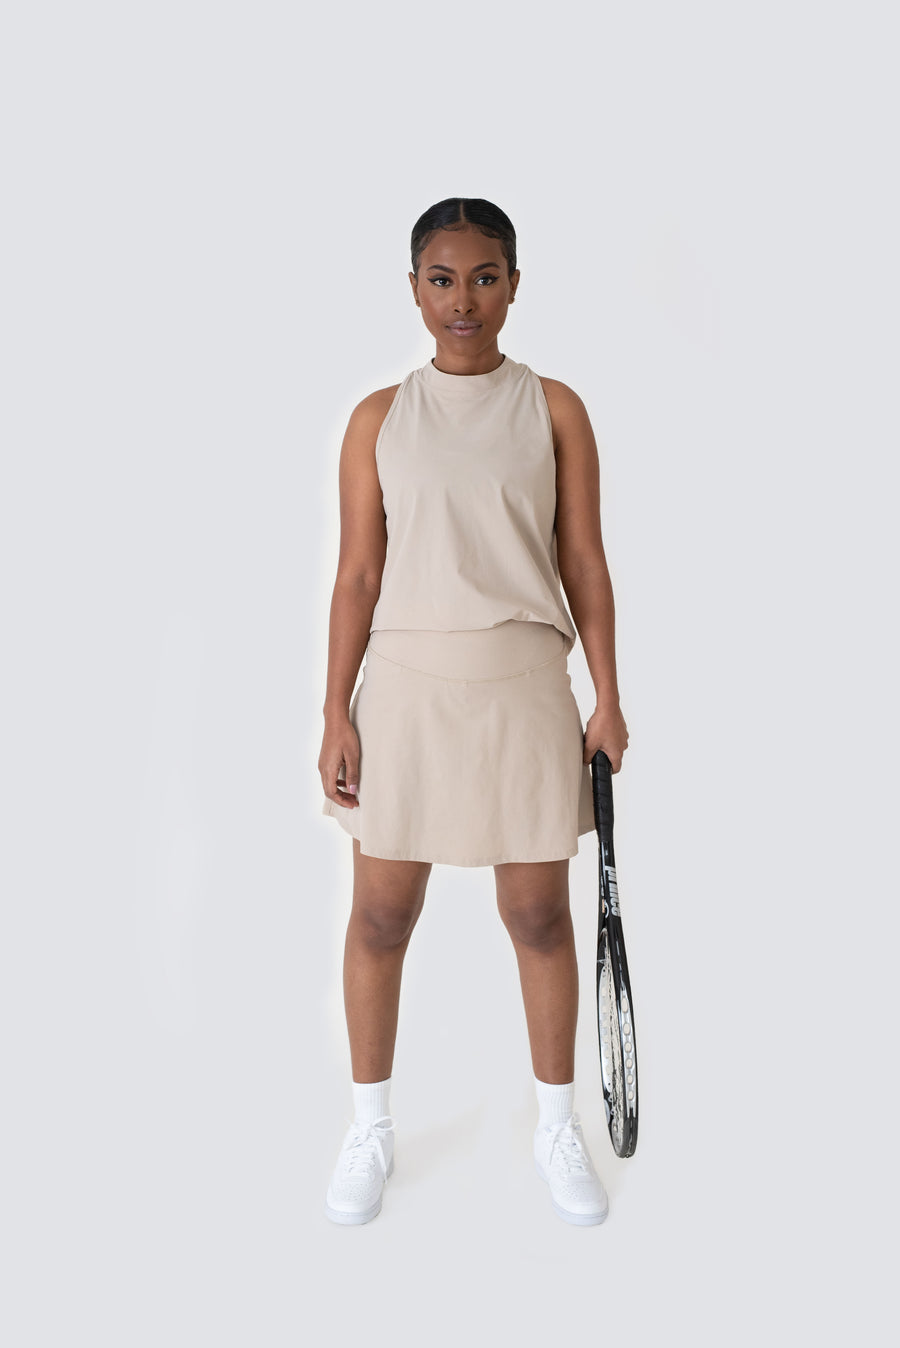 Padelkjol eller tenniskjol designad med en lätt A-linjeformad passform, hög midja och inbyggda innershorts med en padelbollsficka på benet.